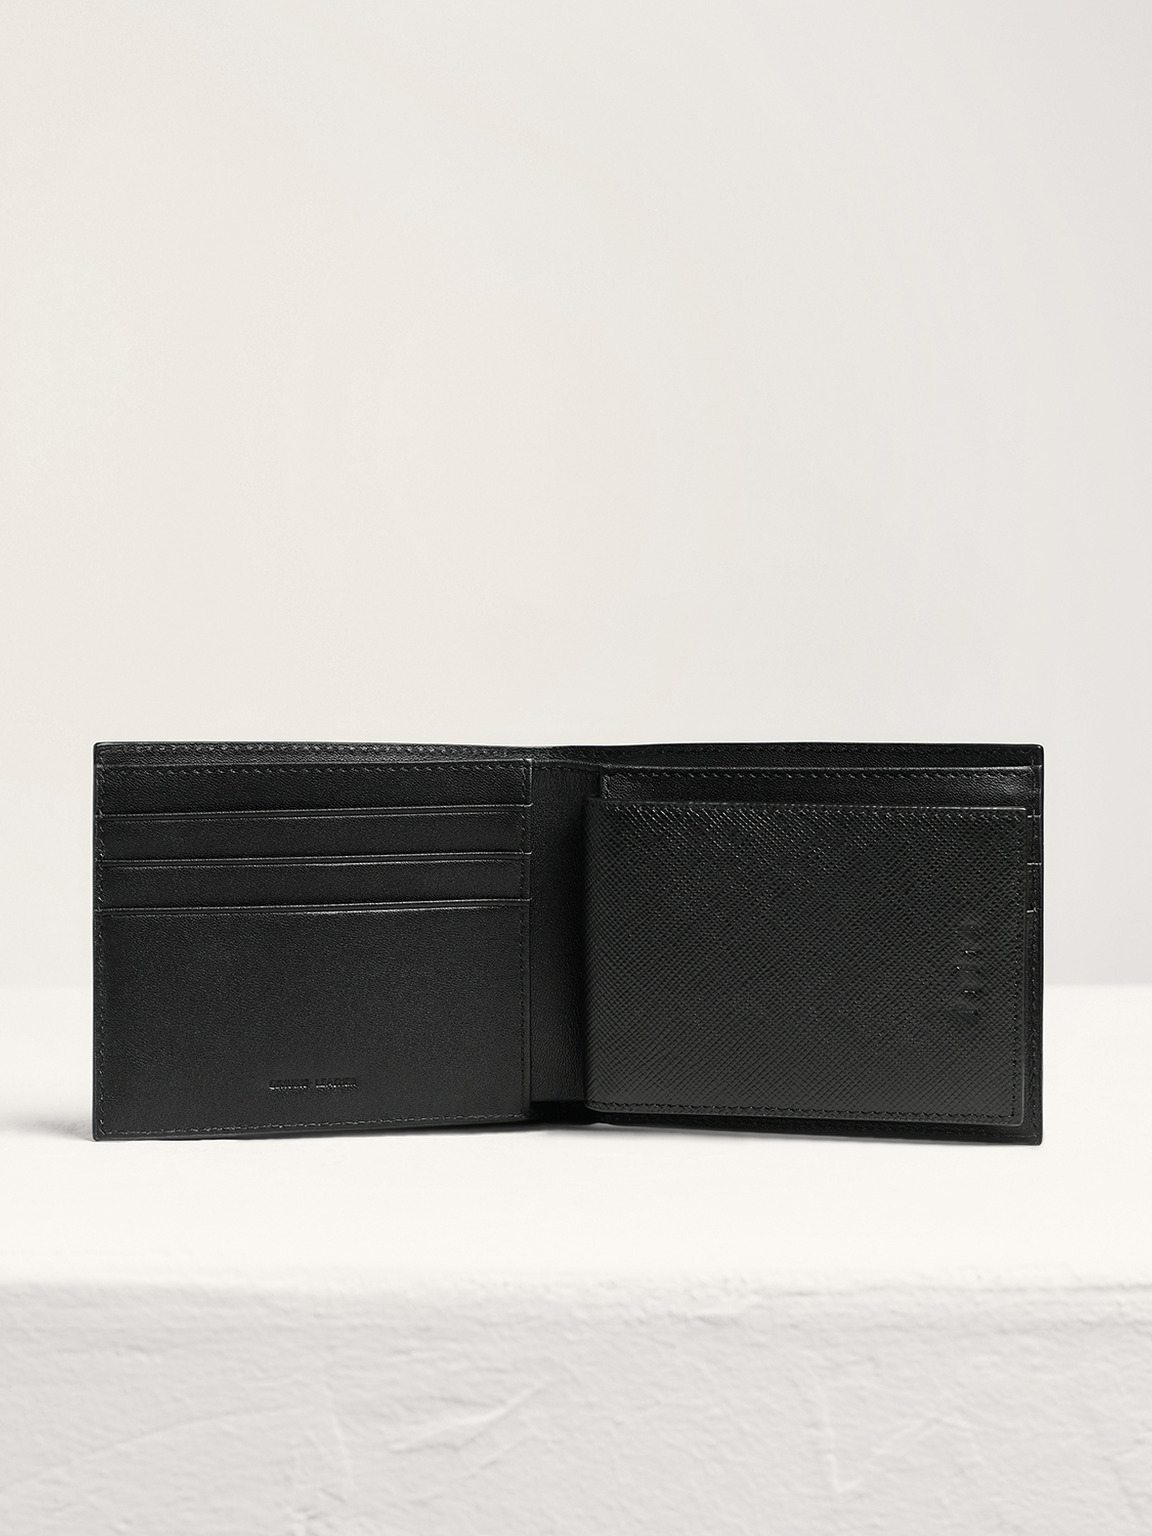 Oliver皮革雙折疊錢包帶貼袋, 黑色